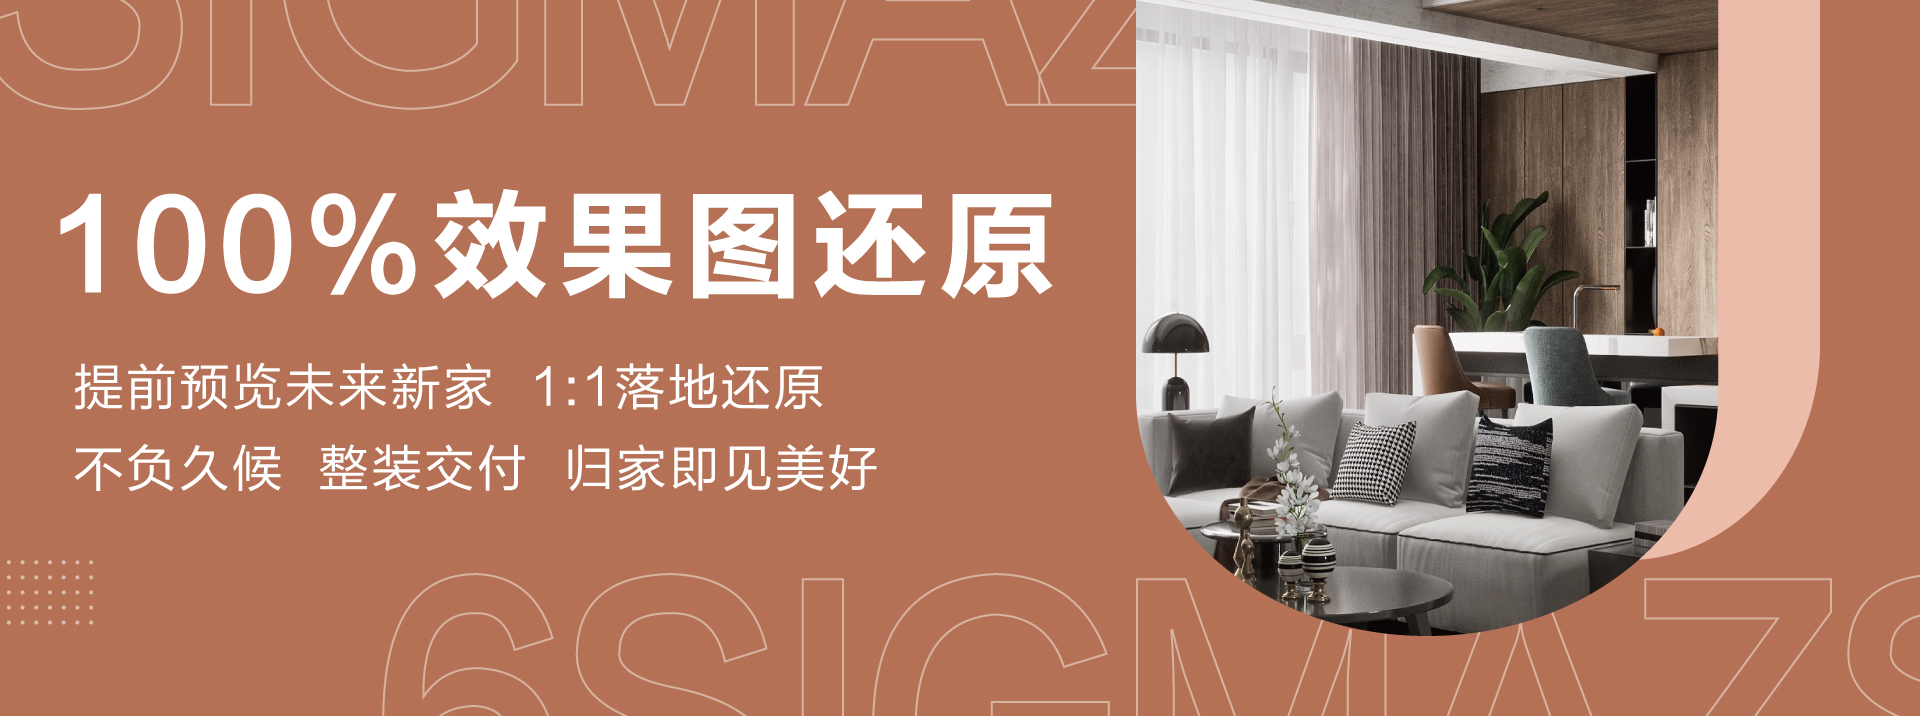 英国人大鸡吧龟头臊中国美女操逼视频网络六西格玛装饰活动海报